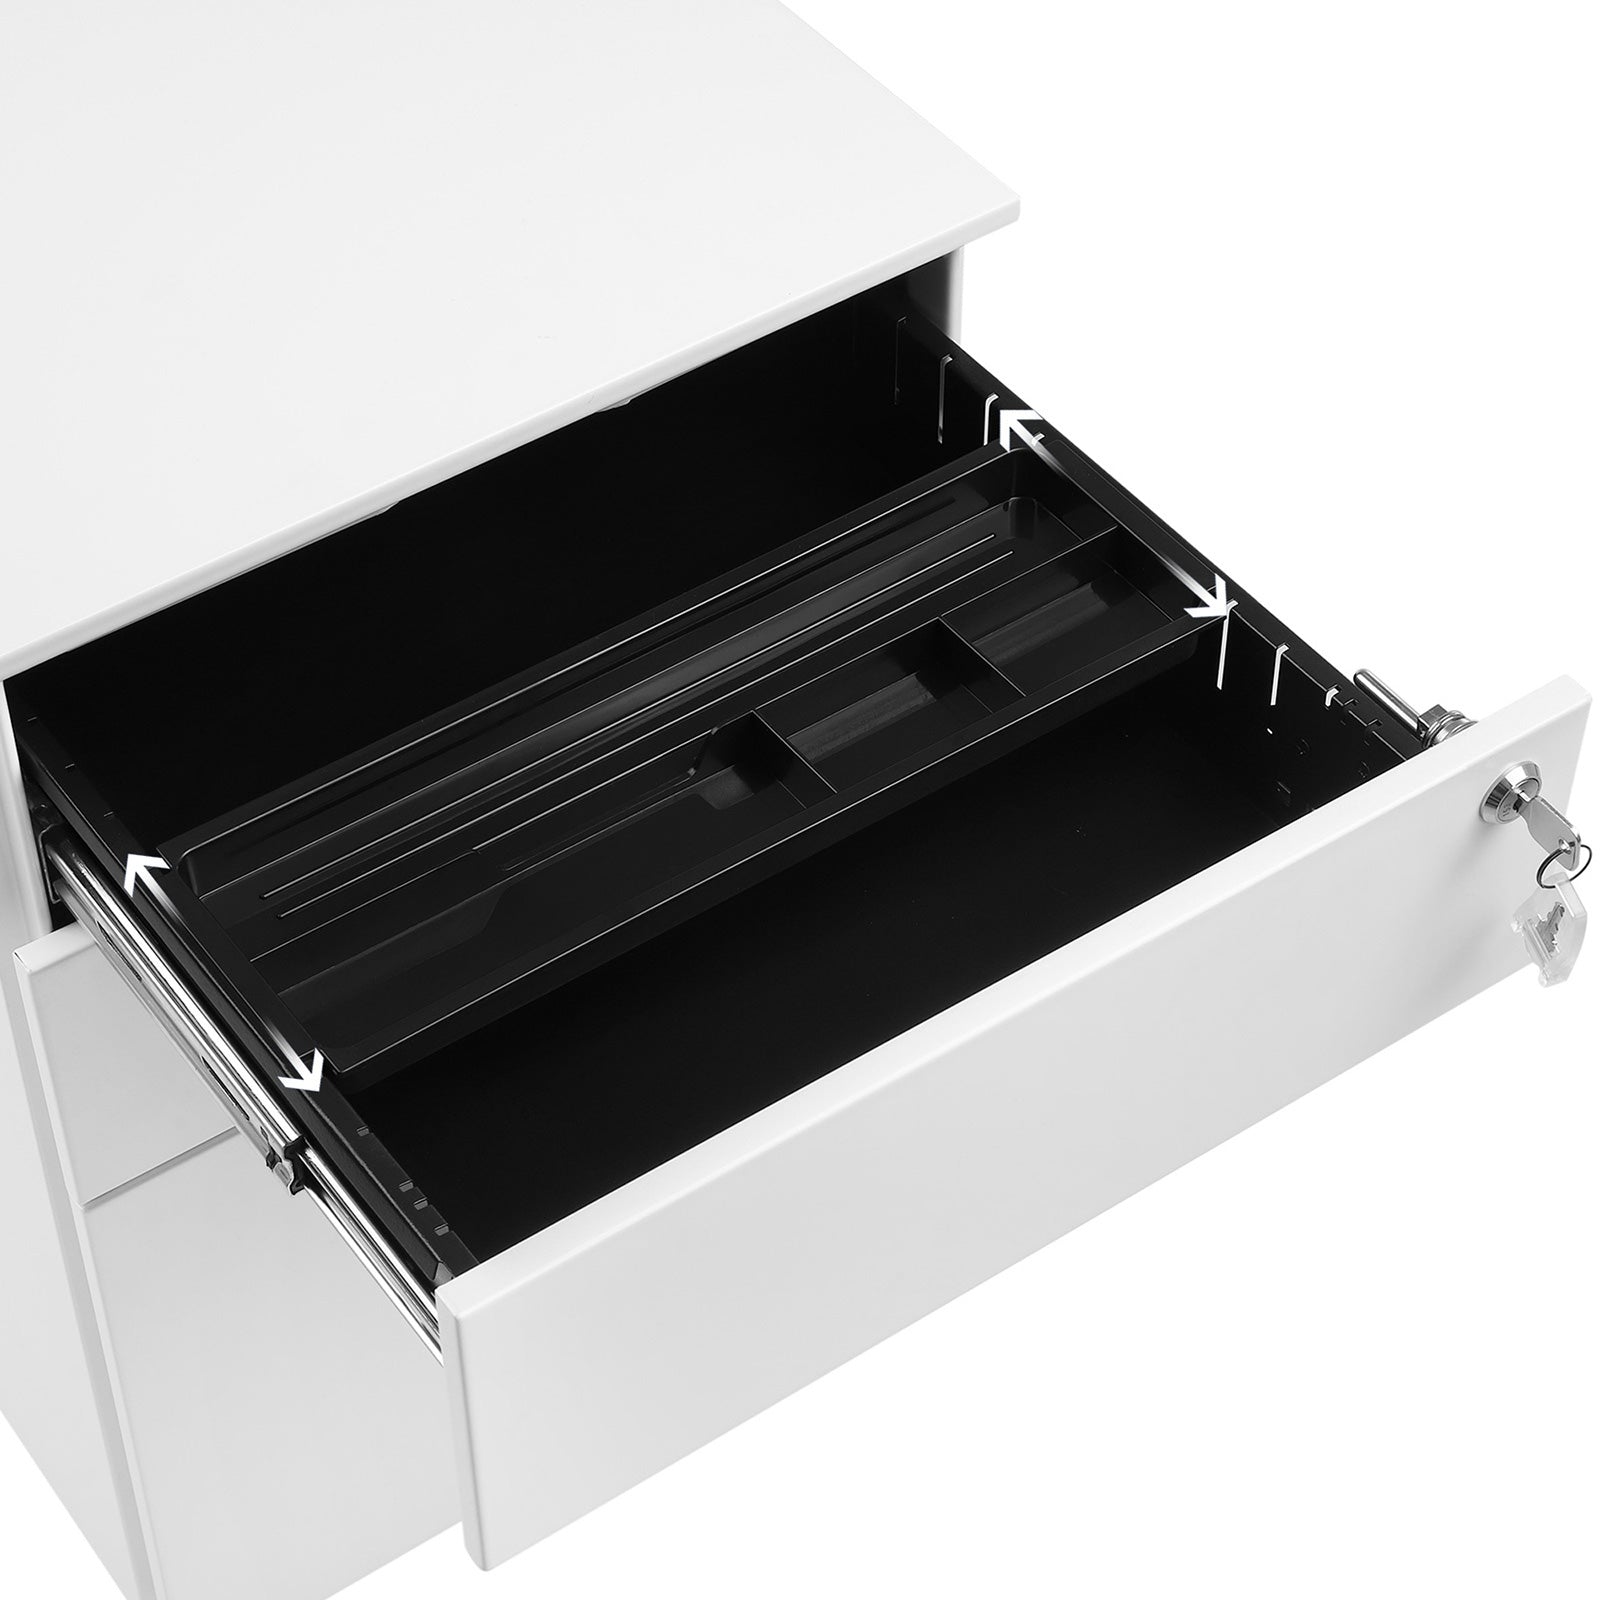 Songmics - Rollcontainer Büroschrank Bürocontainer Aktenschrank Rollschrank 3 Schubladen, 5